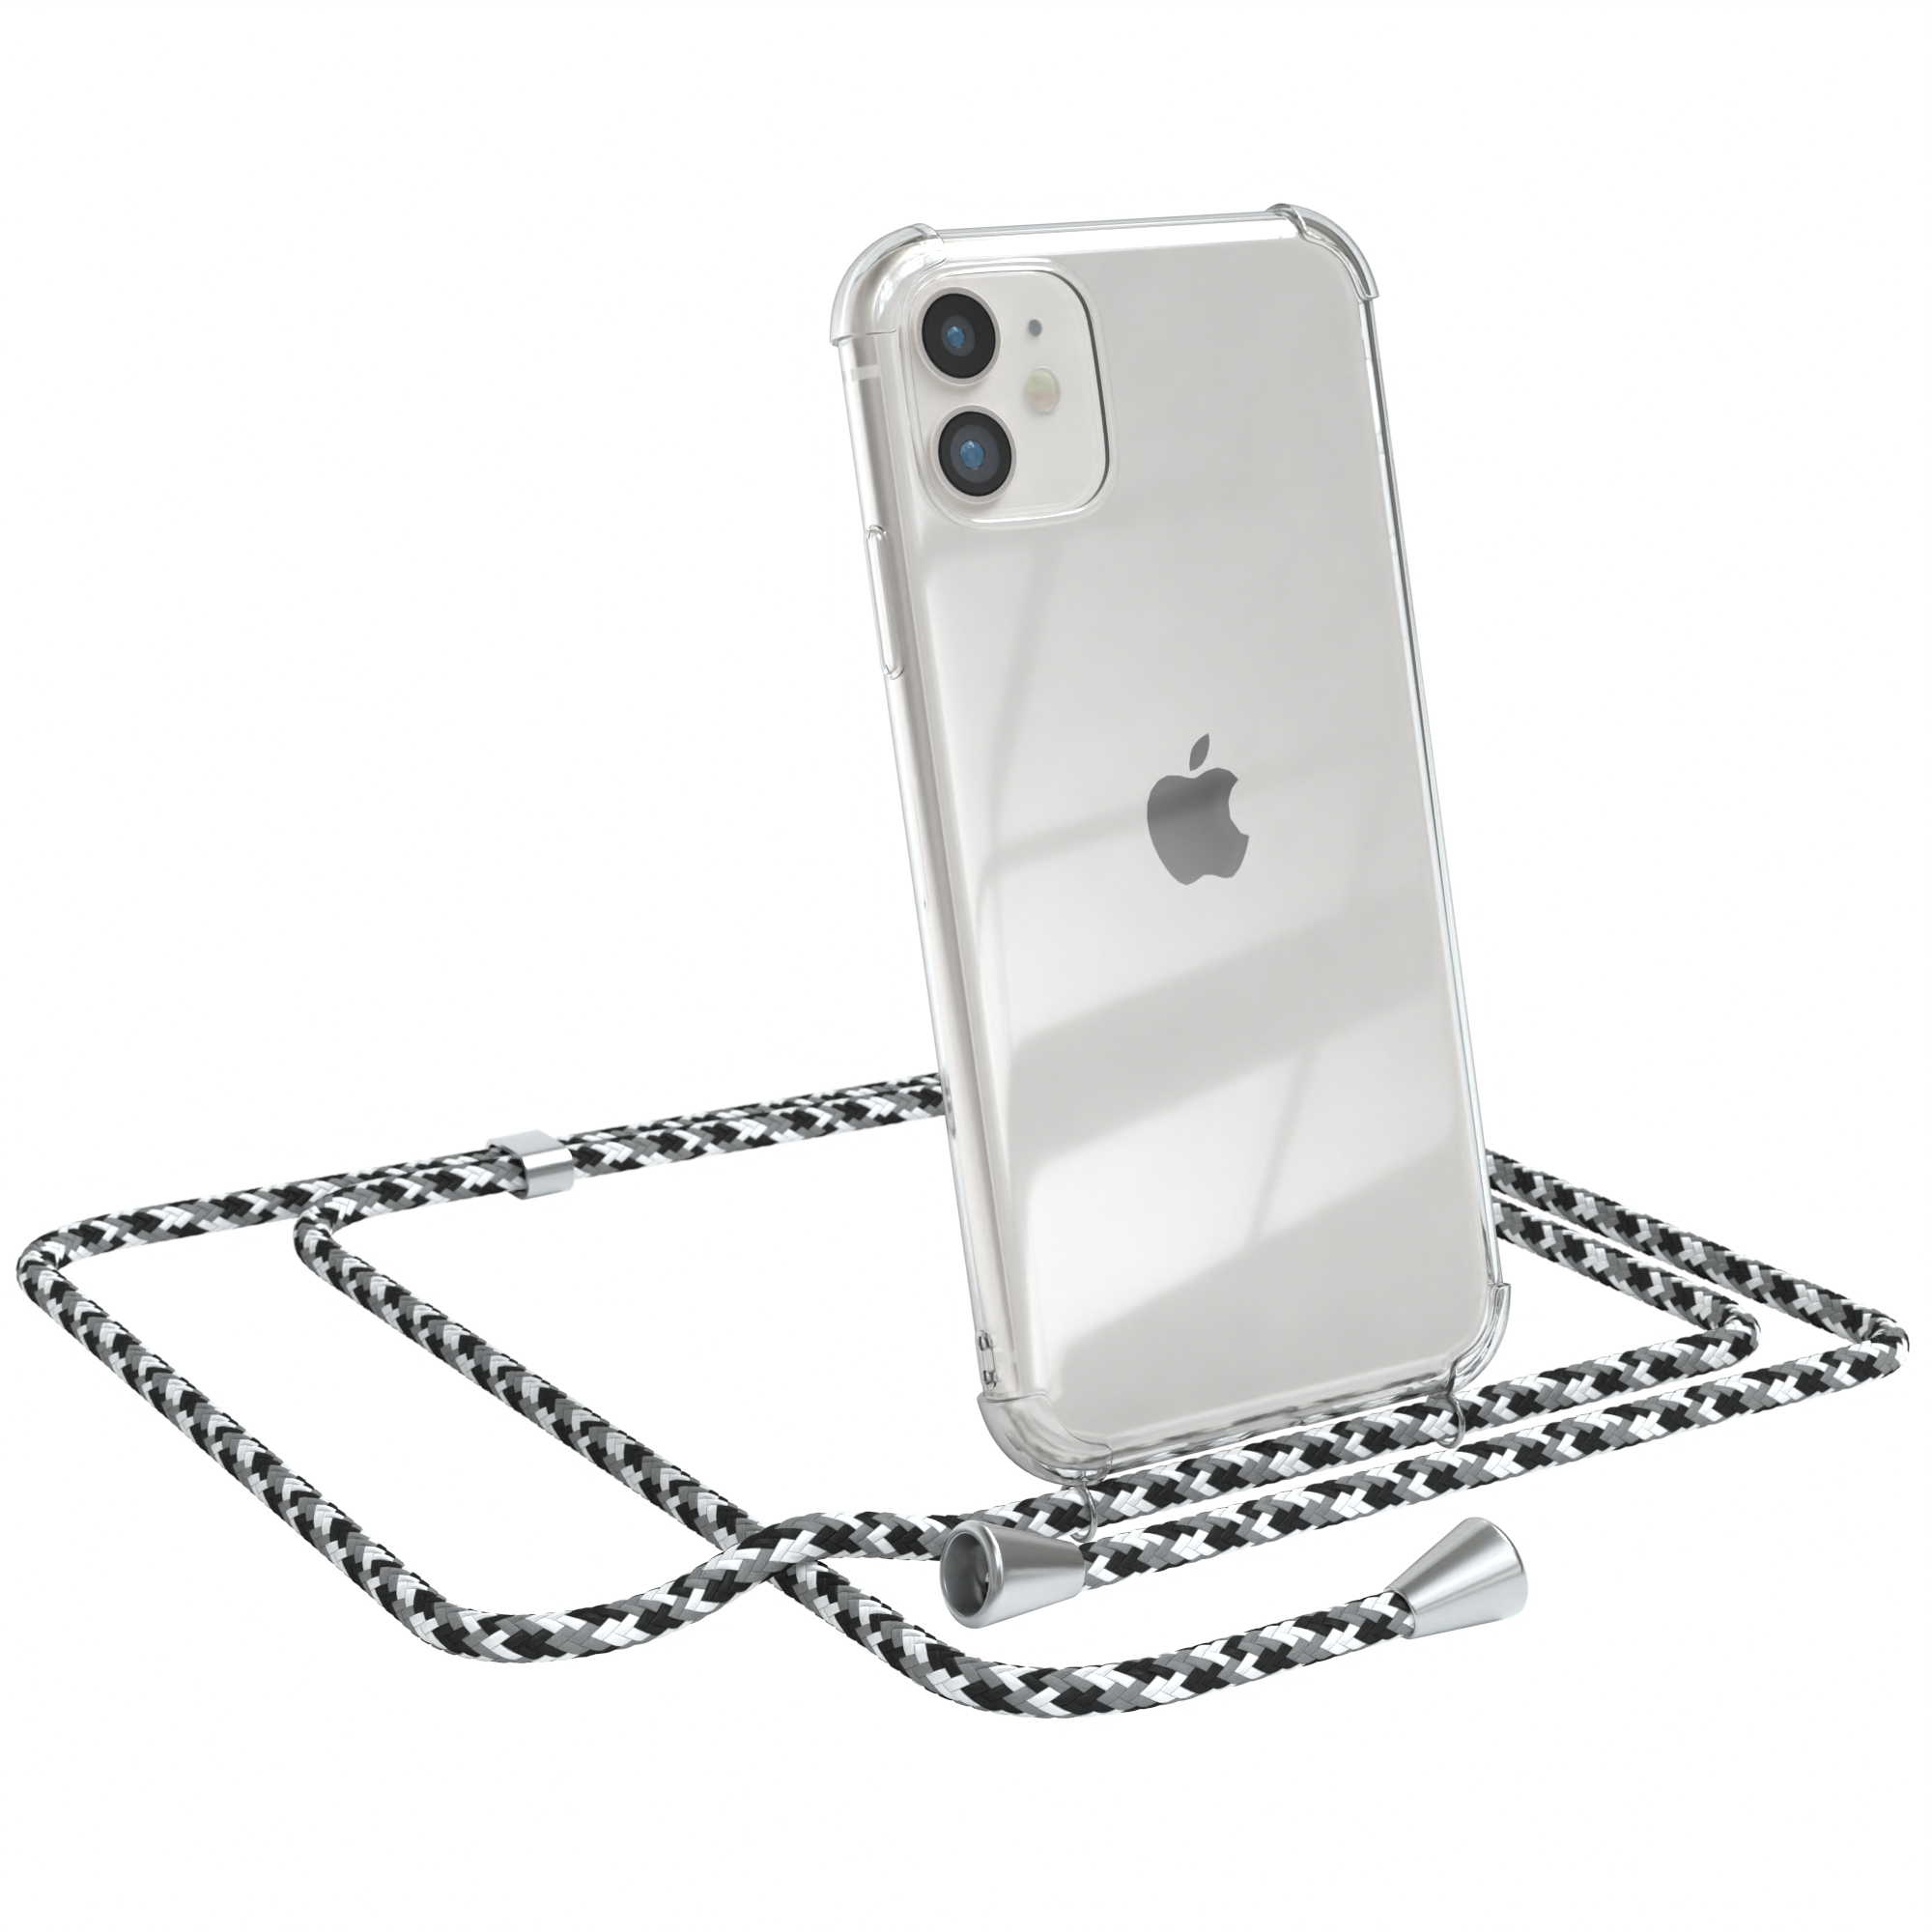 11, Cover EAZY Clips mit Apple, Umhängeband, Clear iPhone Silber / Umhängetasche, Schwarz Camouflage CASE